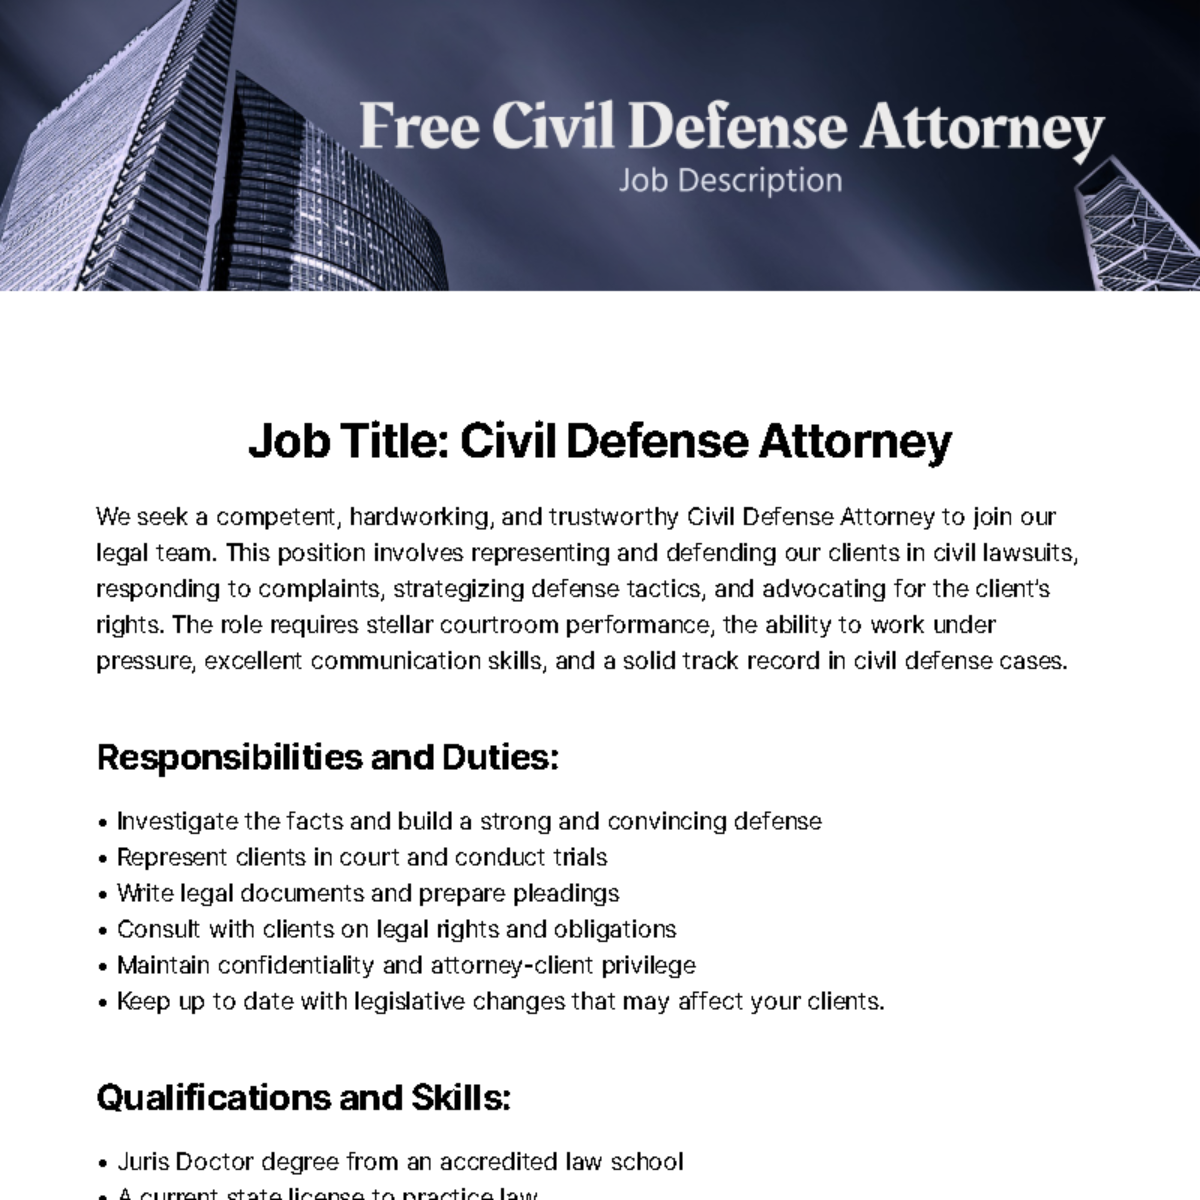 Free Civil Defense Attorney Job Description Template